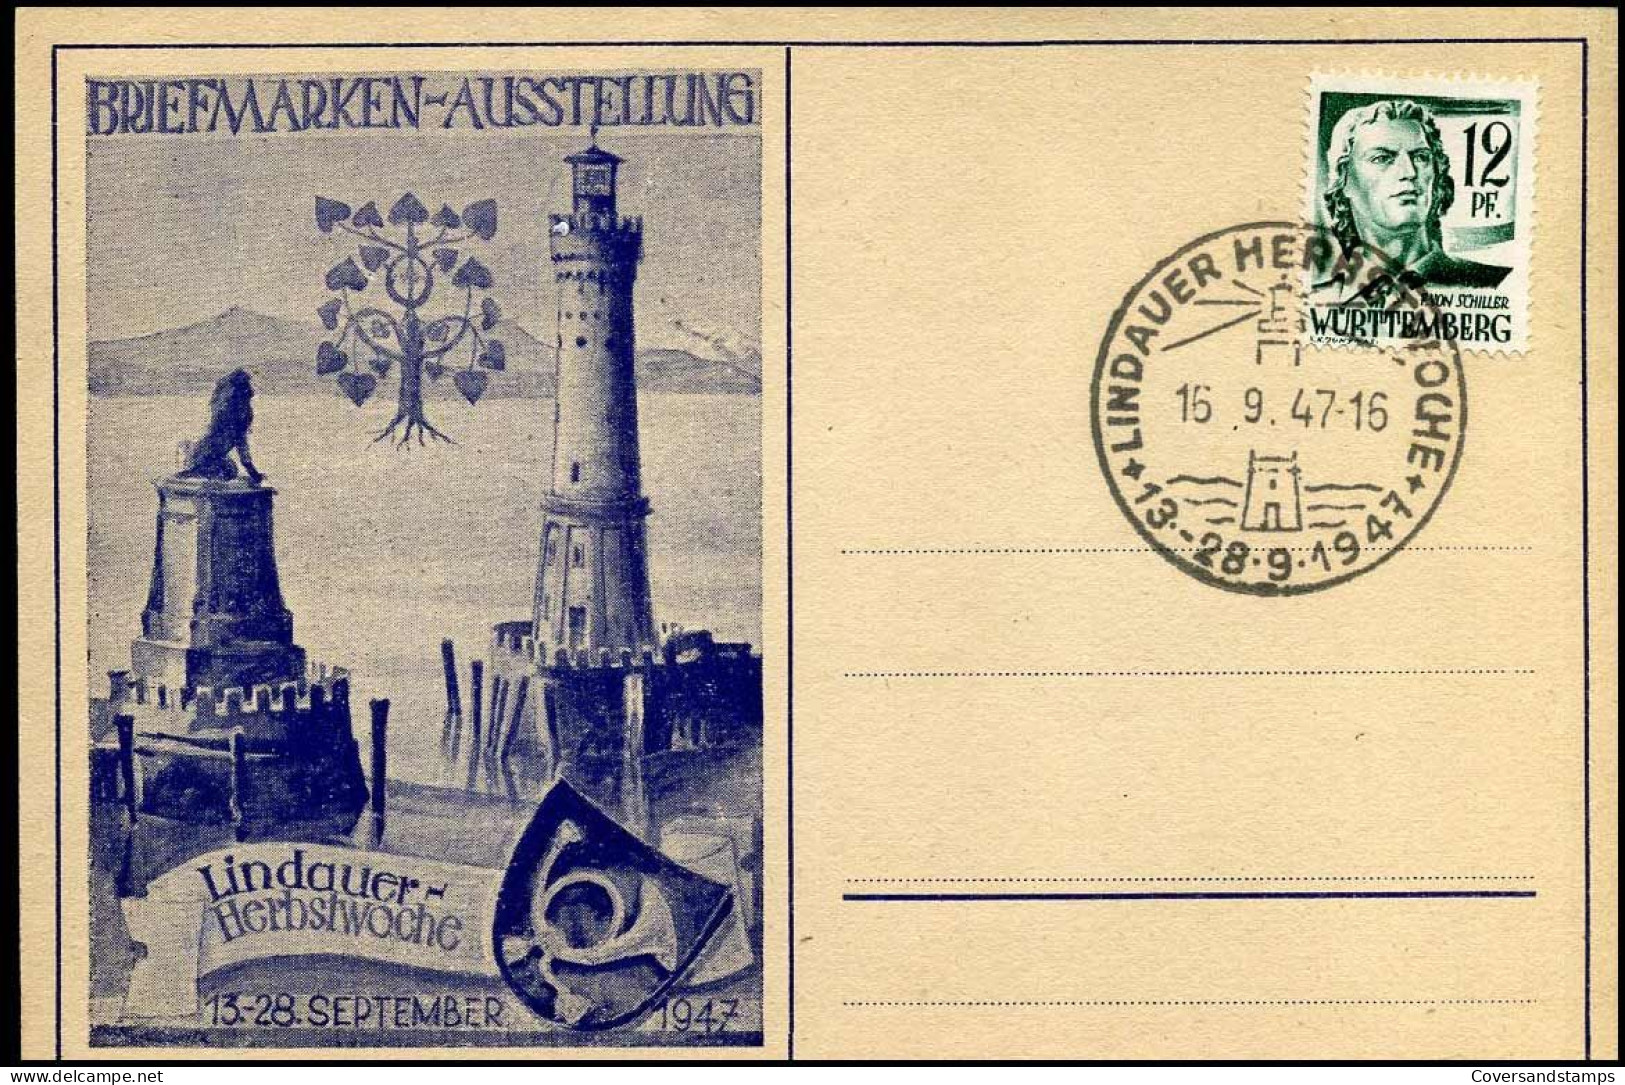 Württemberg - Postkarte Briefmarken Ausstellung Lindauer Herbstwoche - 15-09-1947 - Württemberg